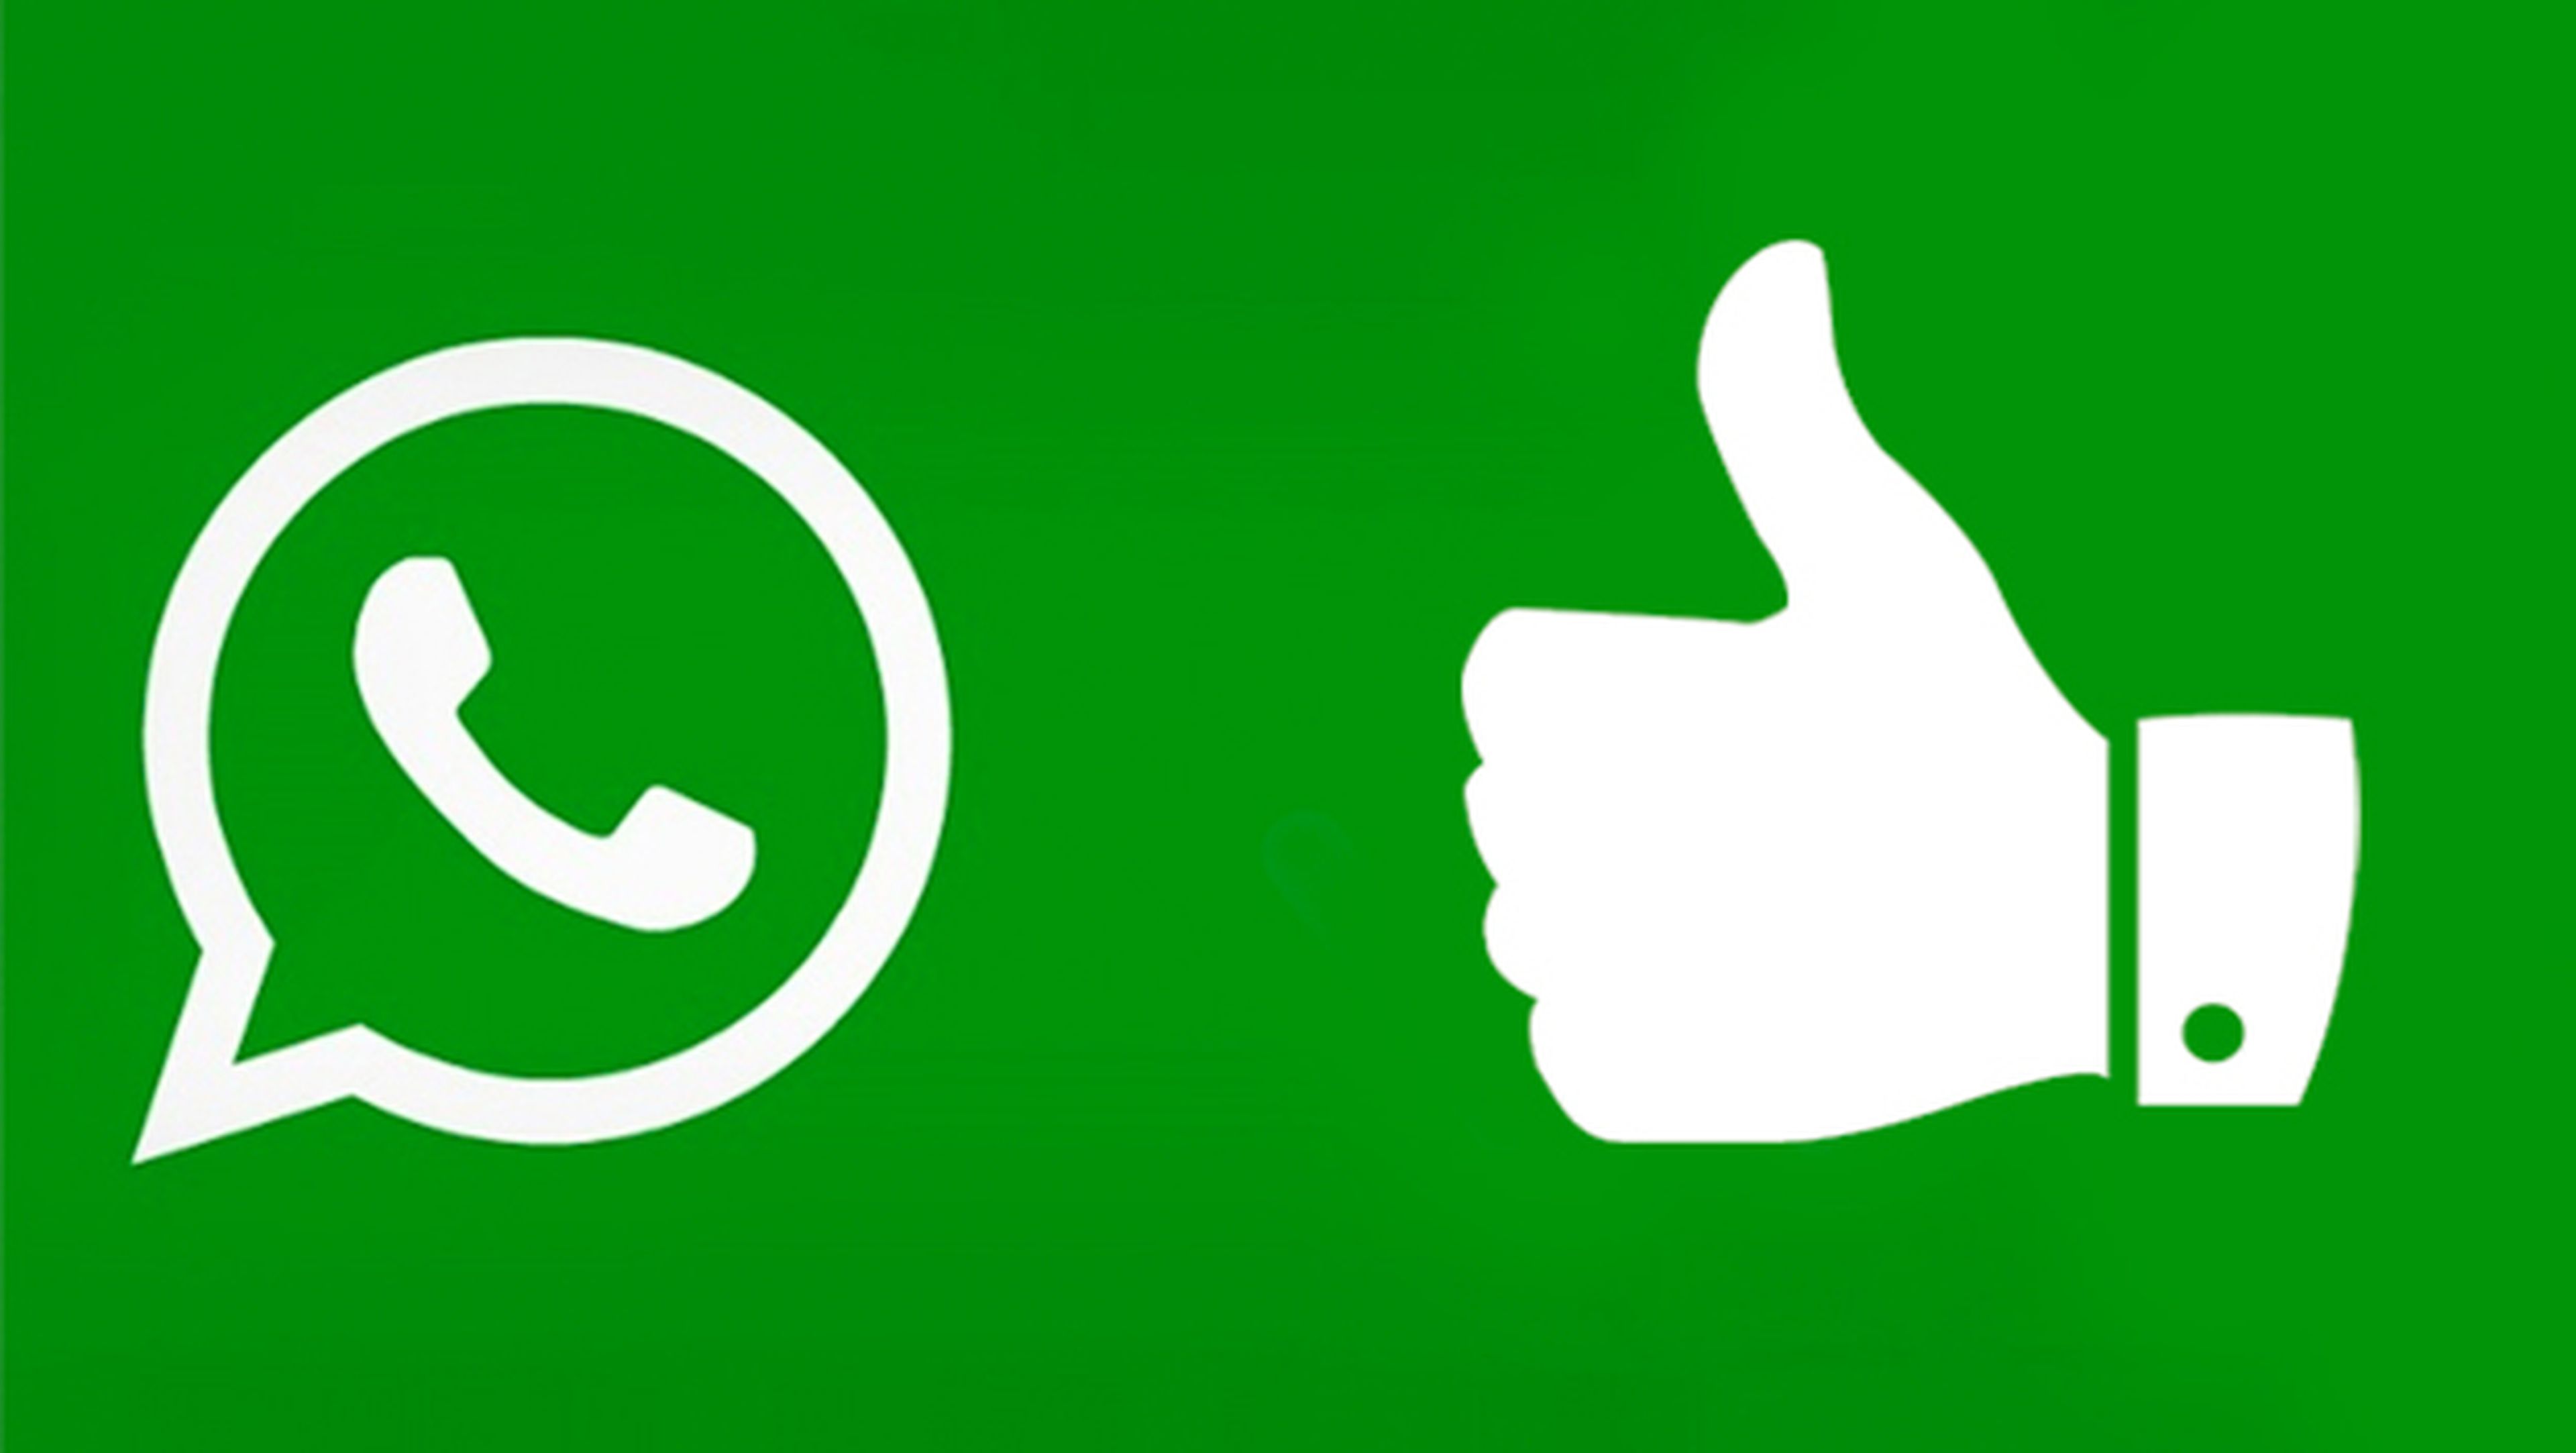 WhatsApp permitiría "marcar como no leído" y dar "like" a las fotos